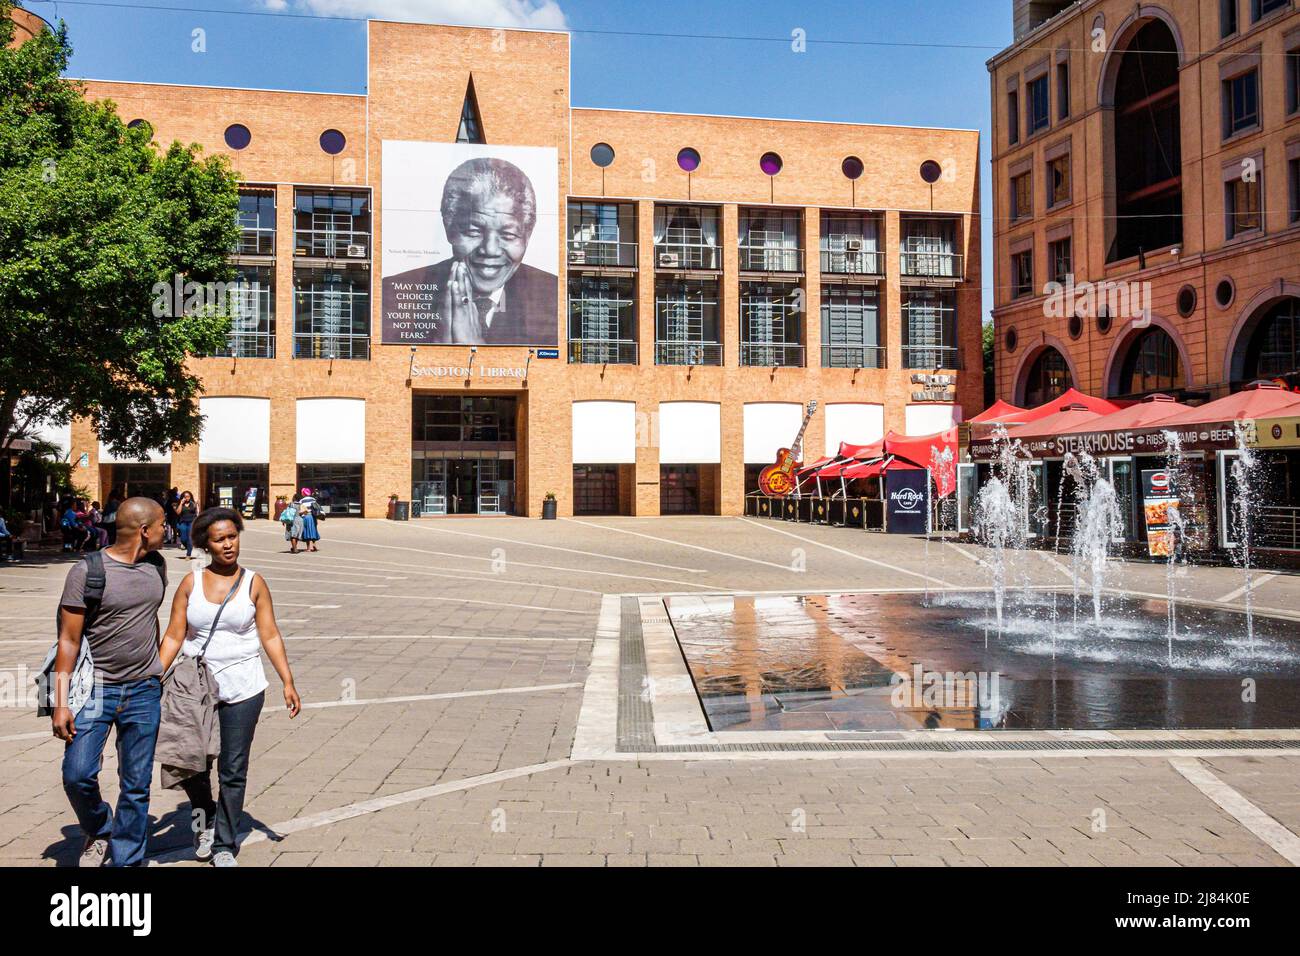 Johannesburg Sud Africa, Sandton, Nelson Mandela Square, fontana pubblica, uomo nero maschio, donna coppia femminile, Sandton Library Foto Stock